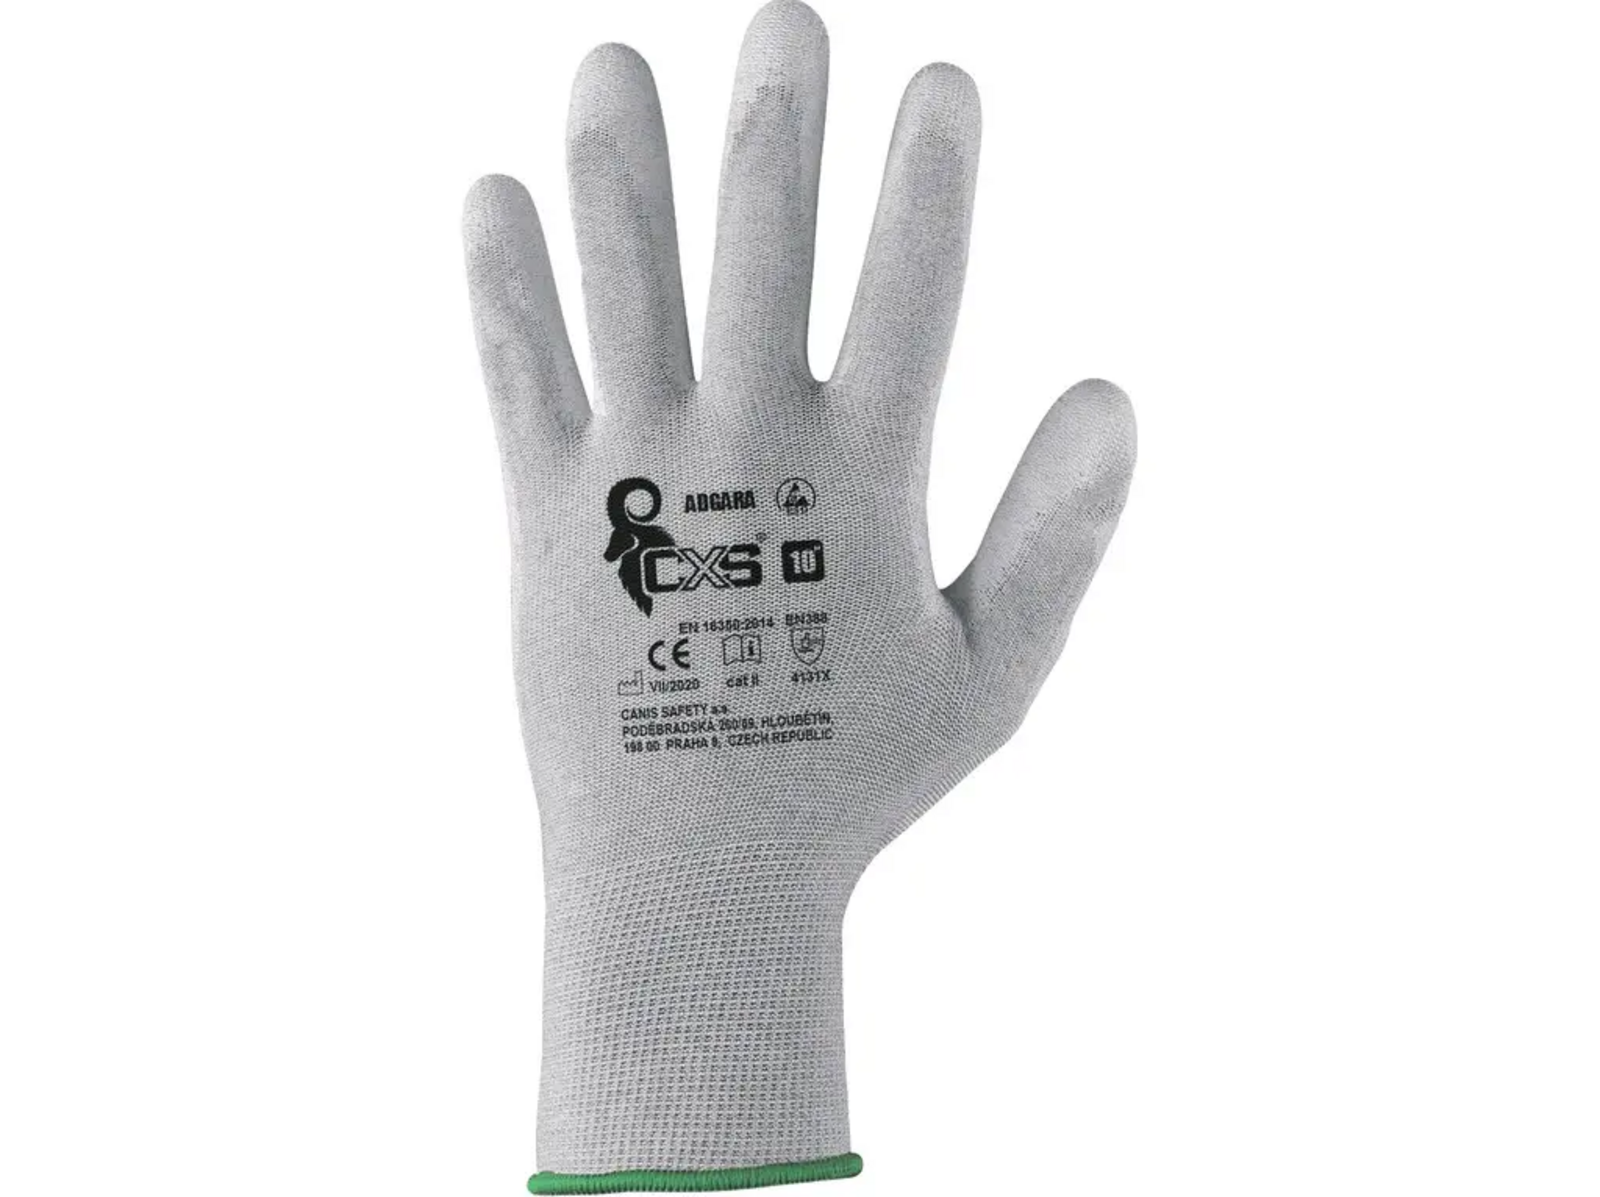 Povrstvené antistatické rukavice CXS Adgara - veľkosť: 7/S, farba: sivá